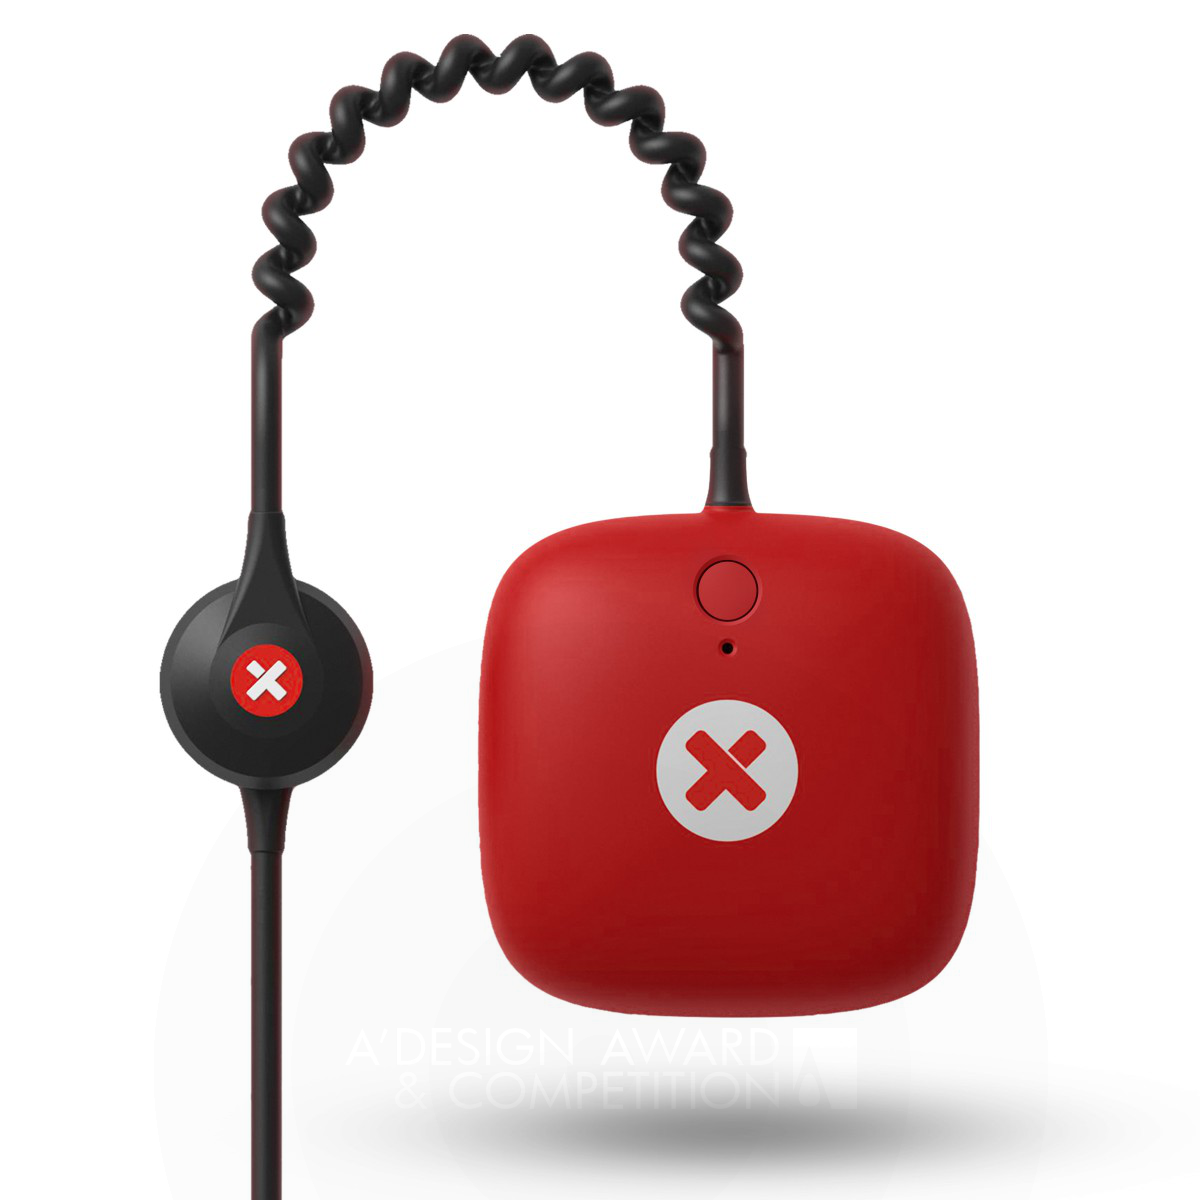 XBody Actiwear Wireless EMS fitness device by Maform